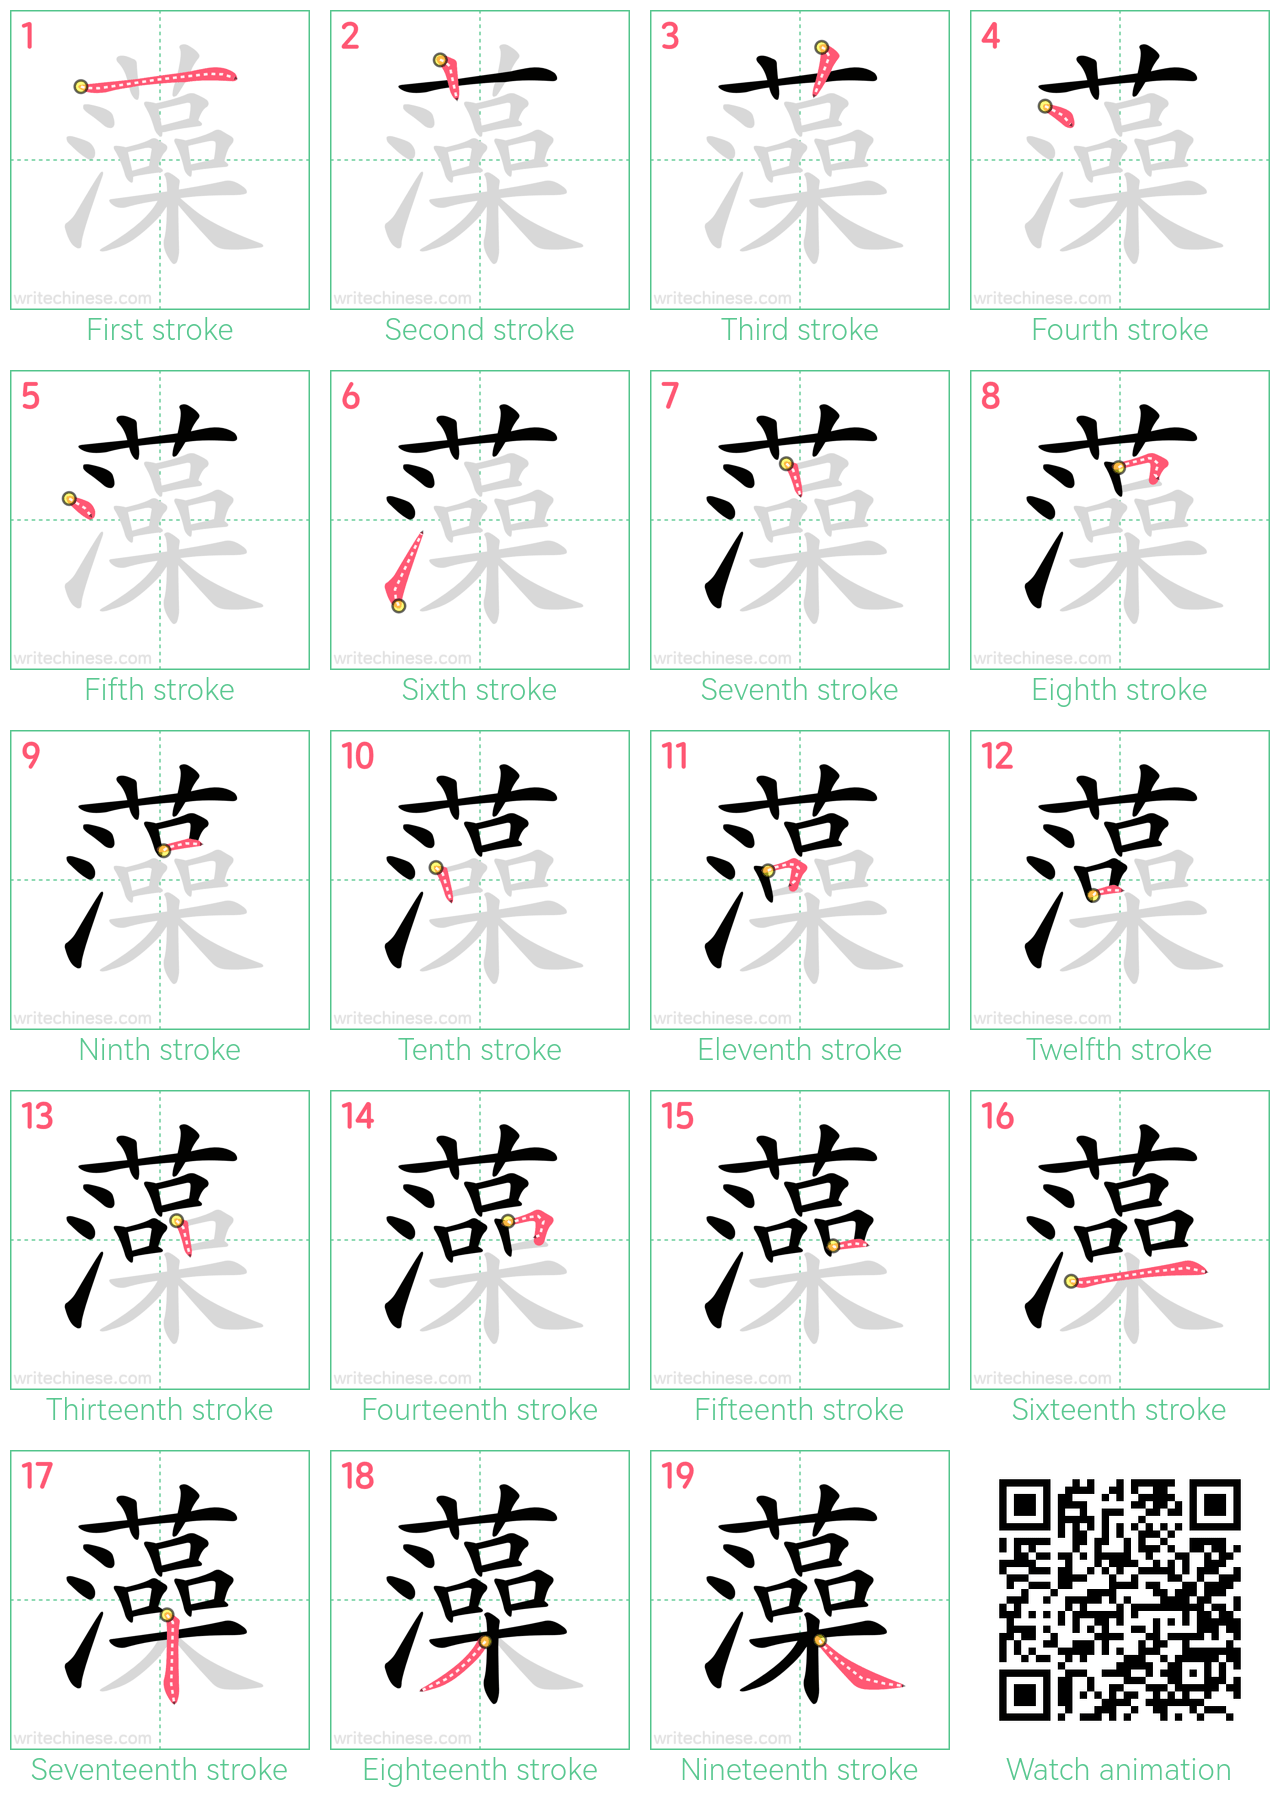 藻 step-by-step stroke order diagrams